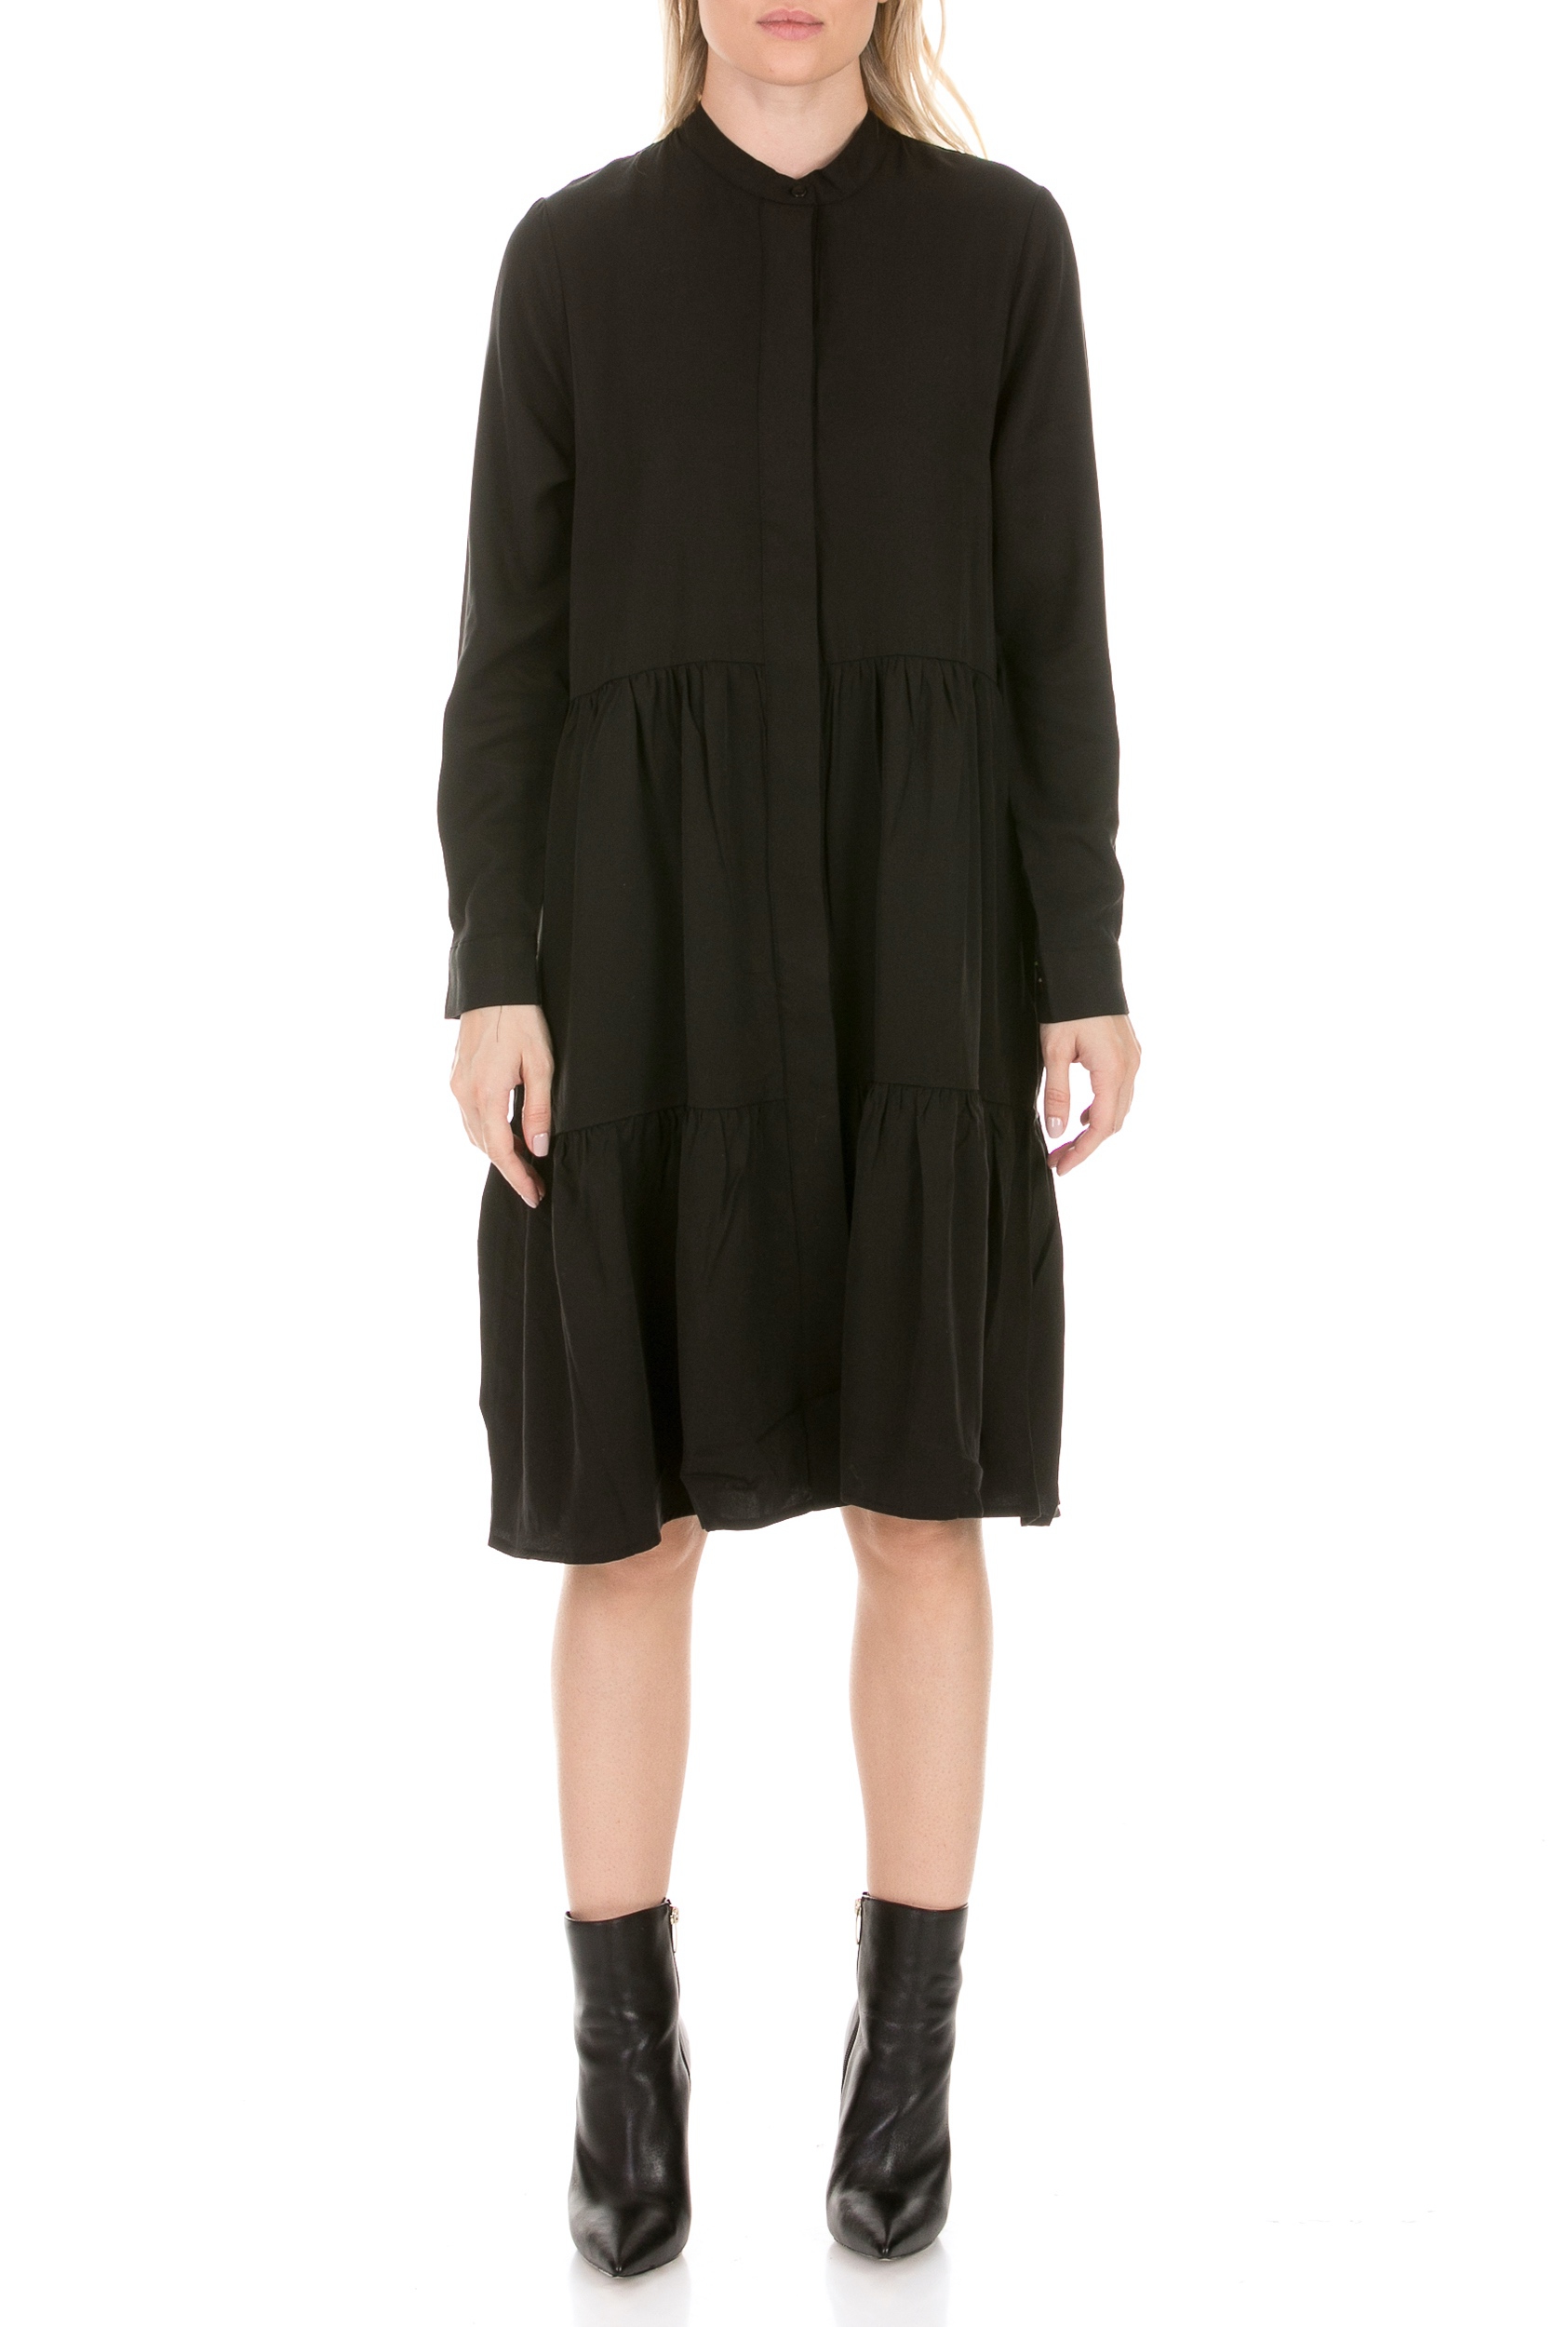 Γυναικεία/Ρούχα/Φορέματα/Μίνι COTTON CANDY - Γυναικείο mini φόρεμα COTTON CANDY PREMIUM SELECTION μαύρο